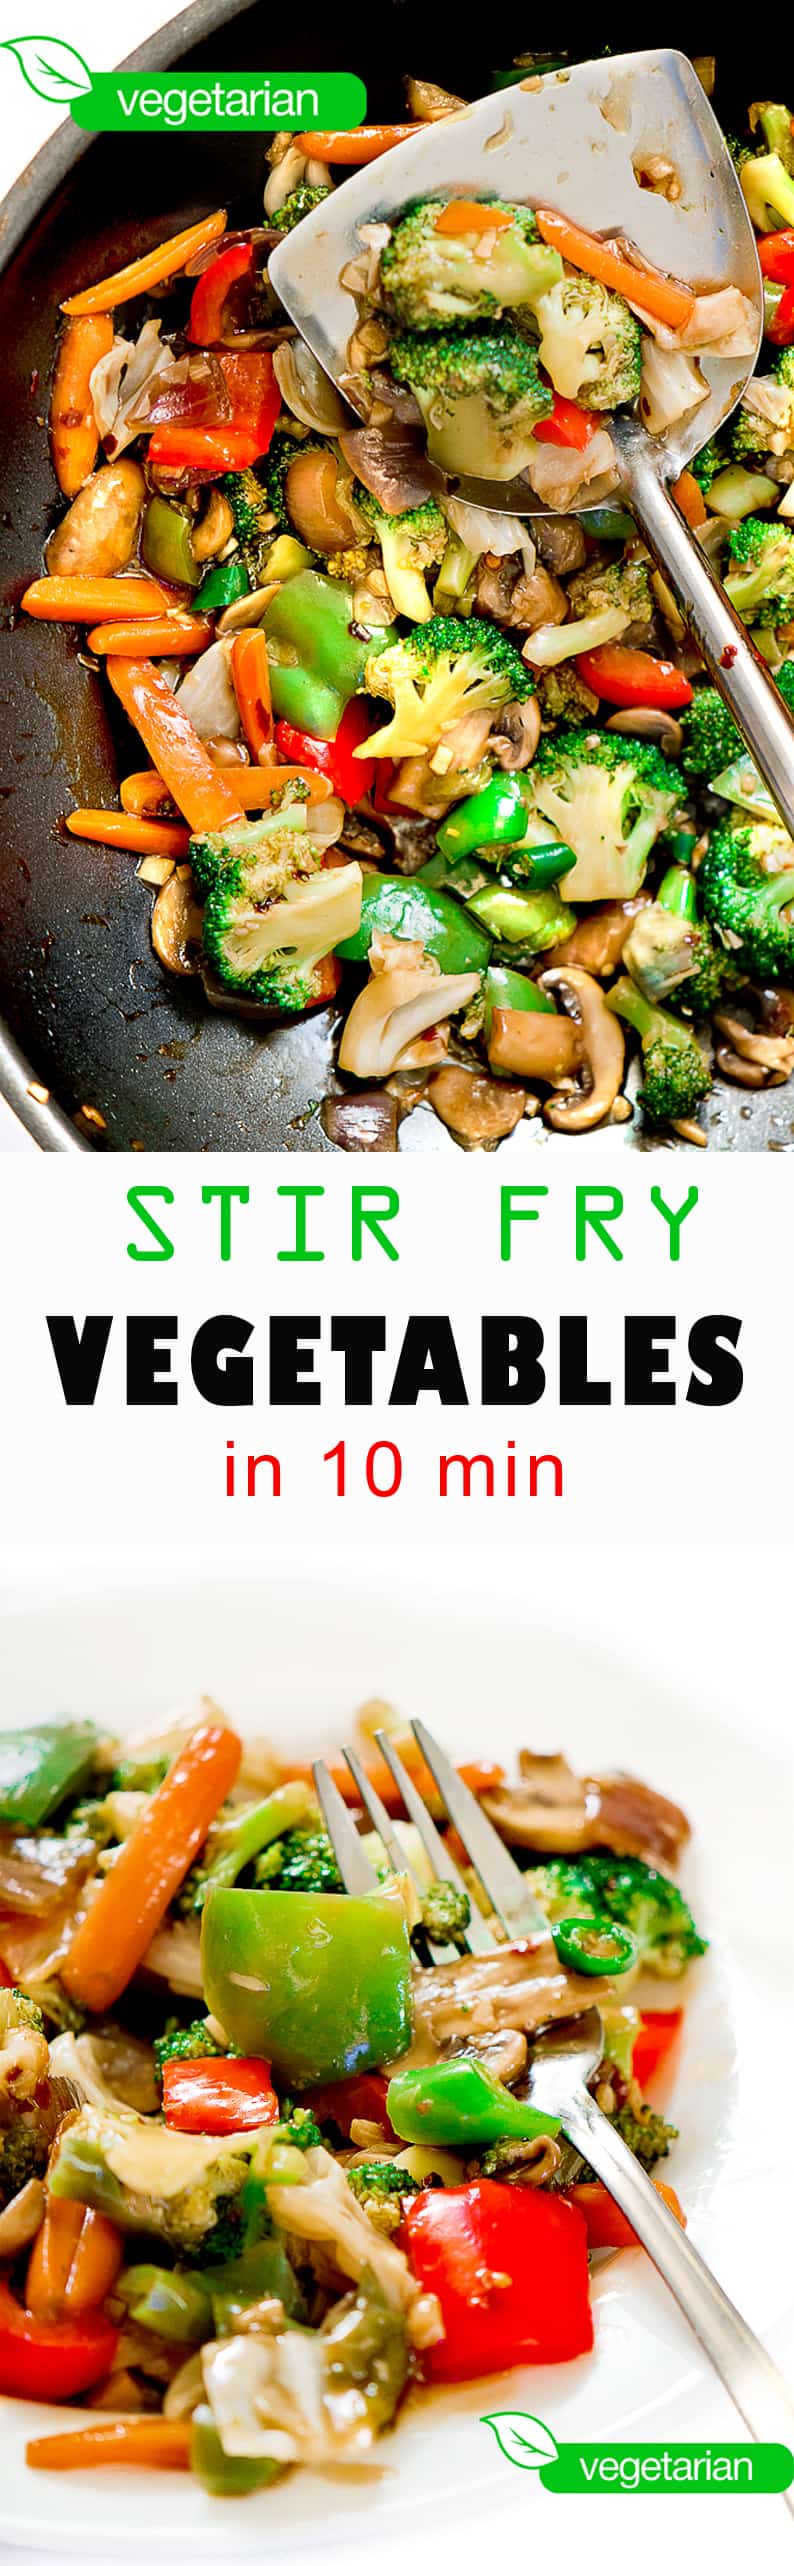 Vegetable stir fry